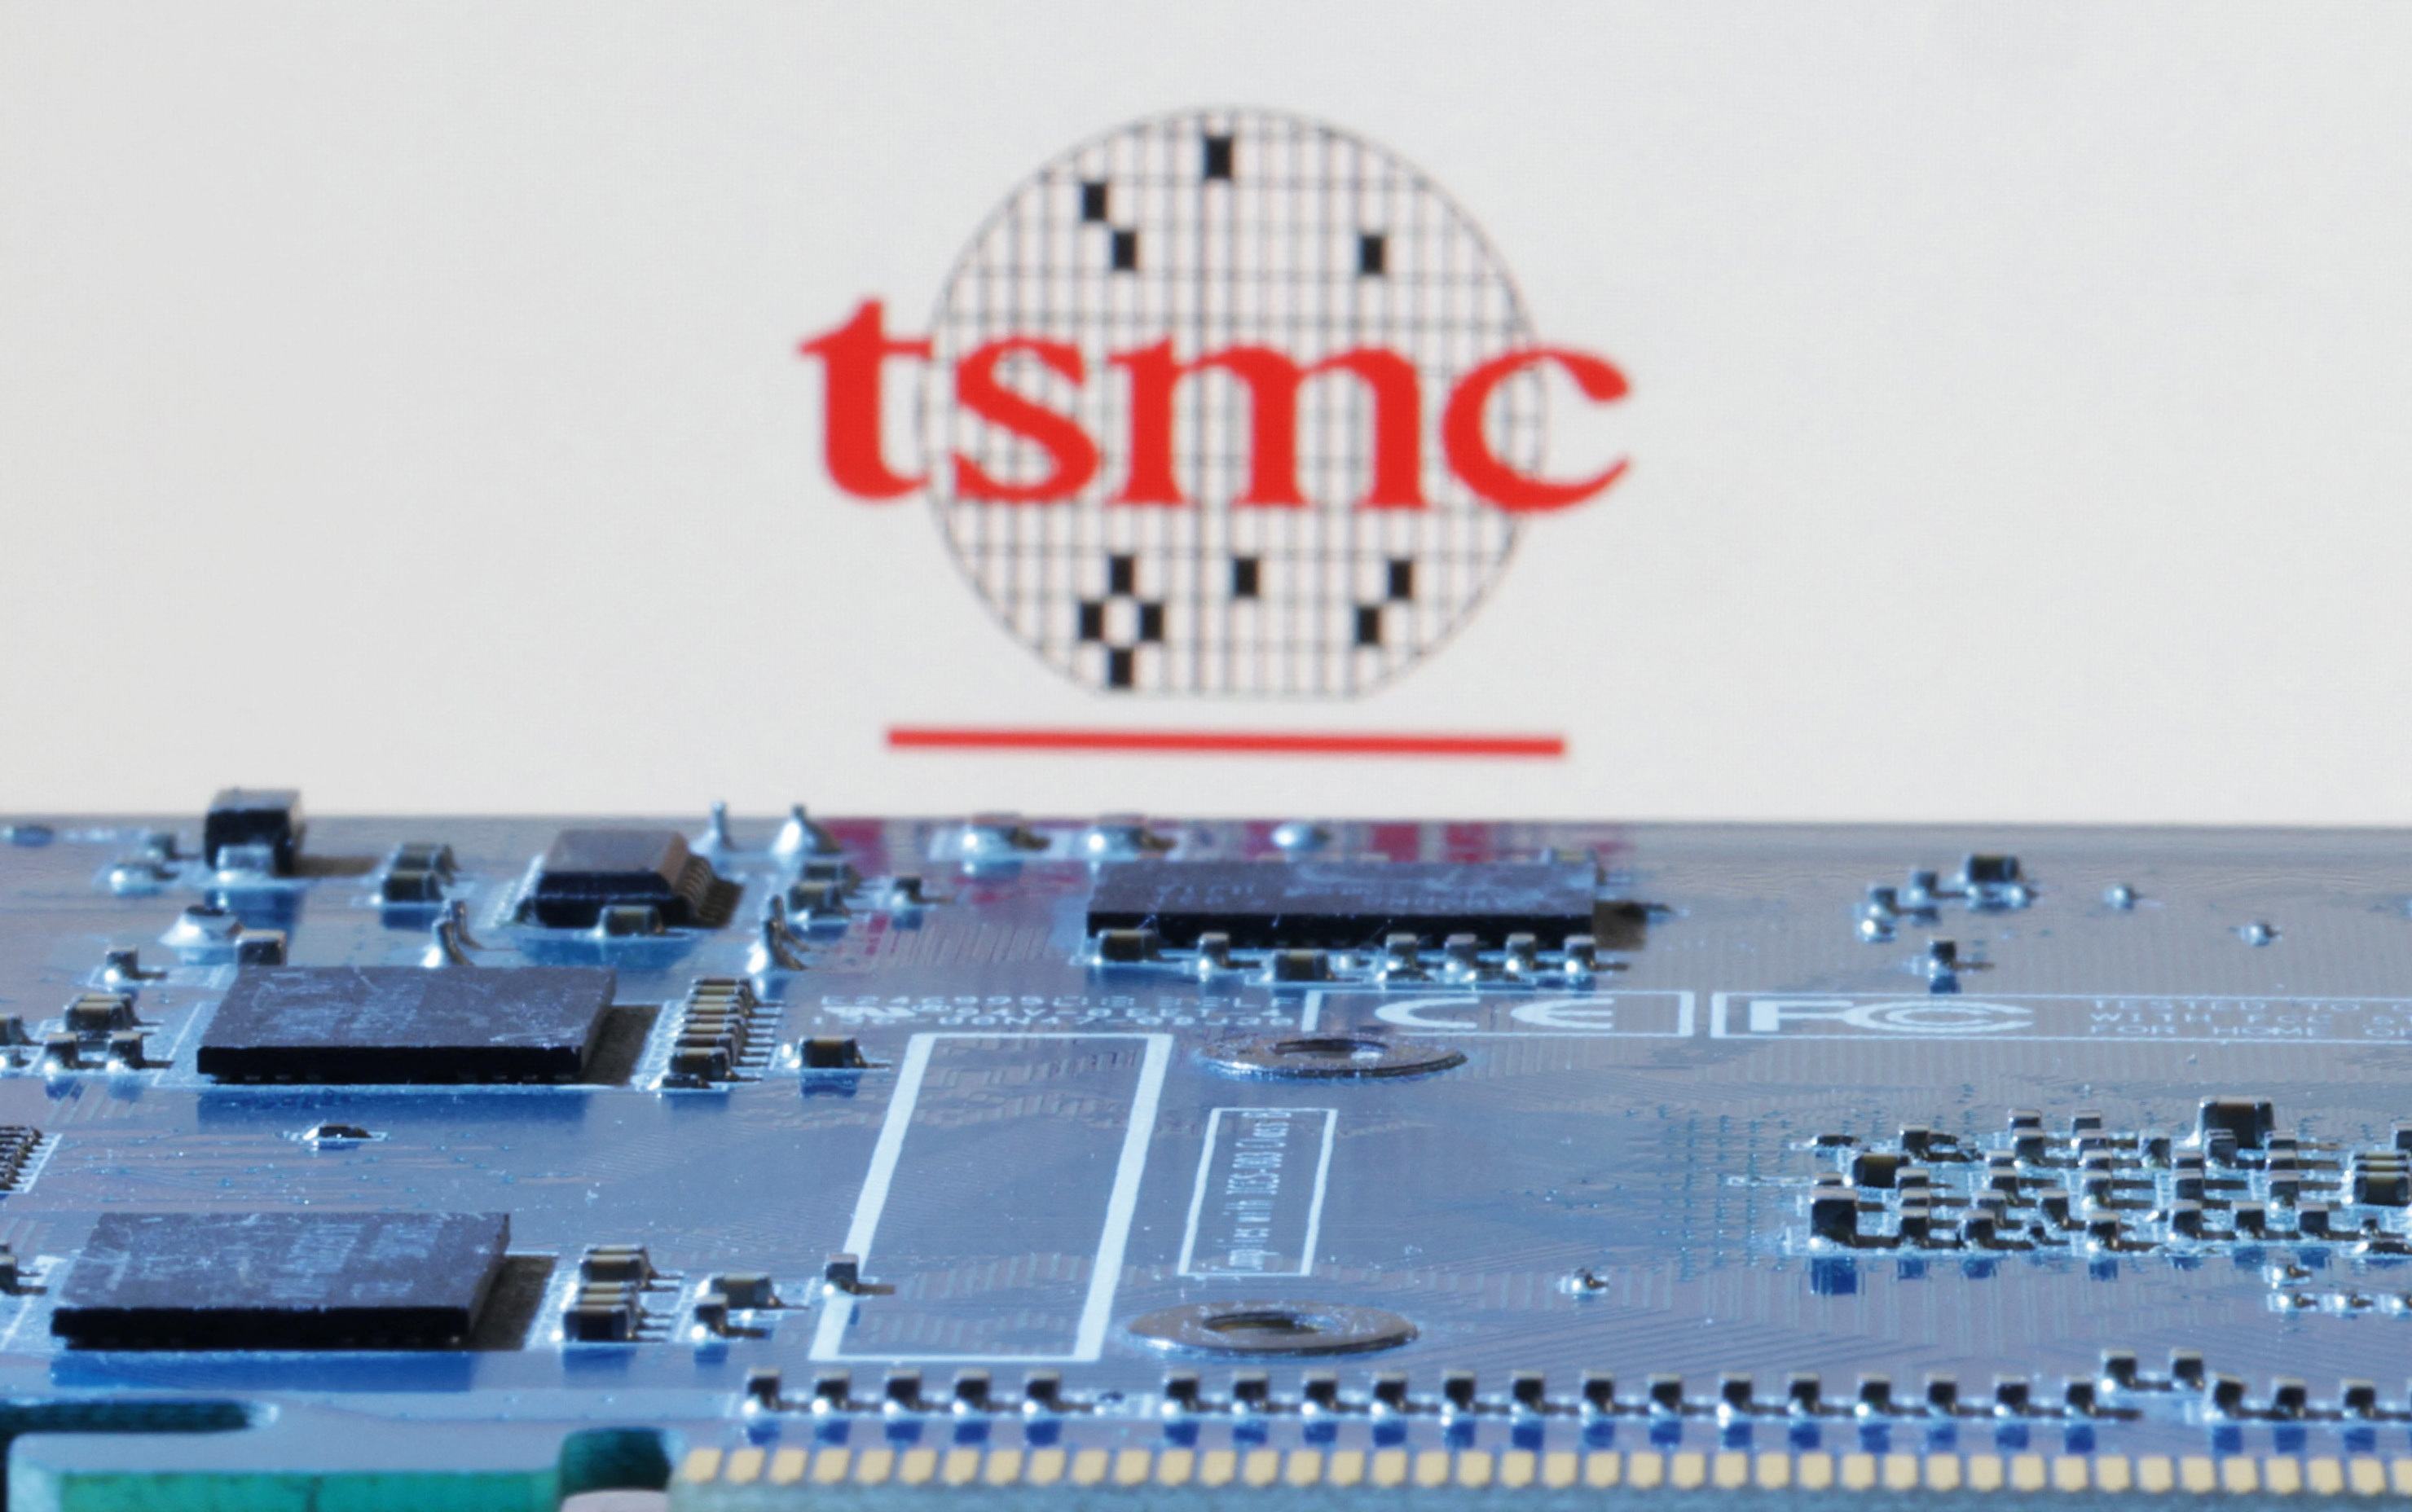 Illustration shows TSMC logo